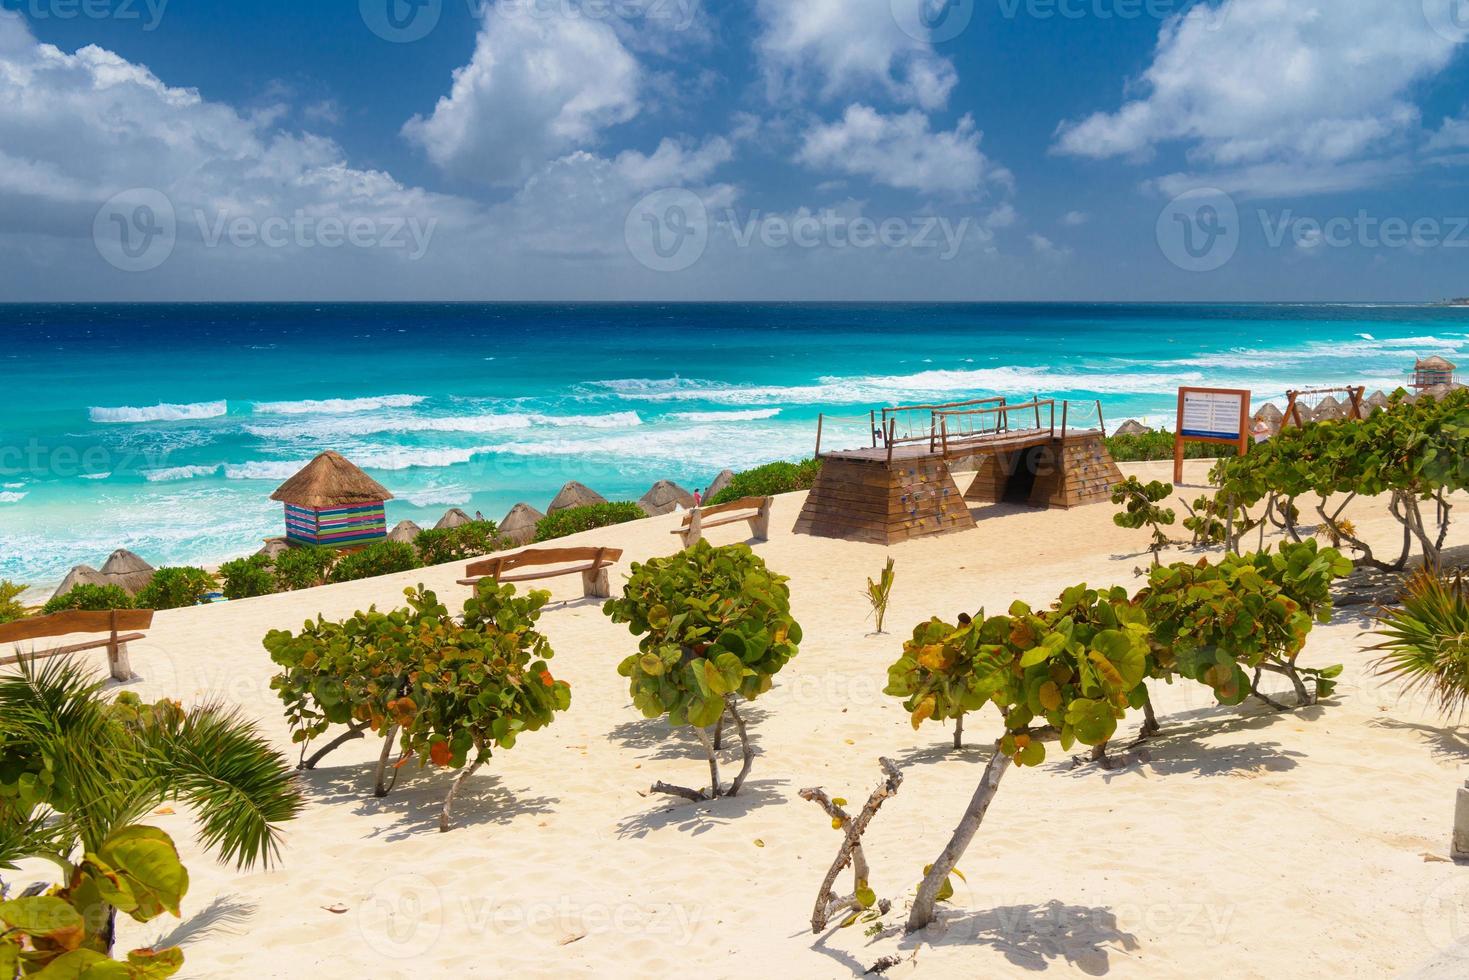 praia de areia com água azul em um dia ensolarado perto de cancun, méxico foto